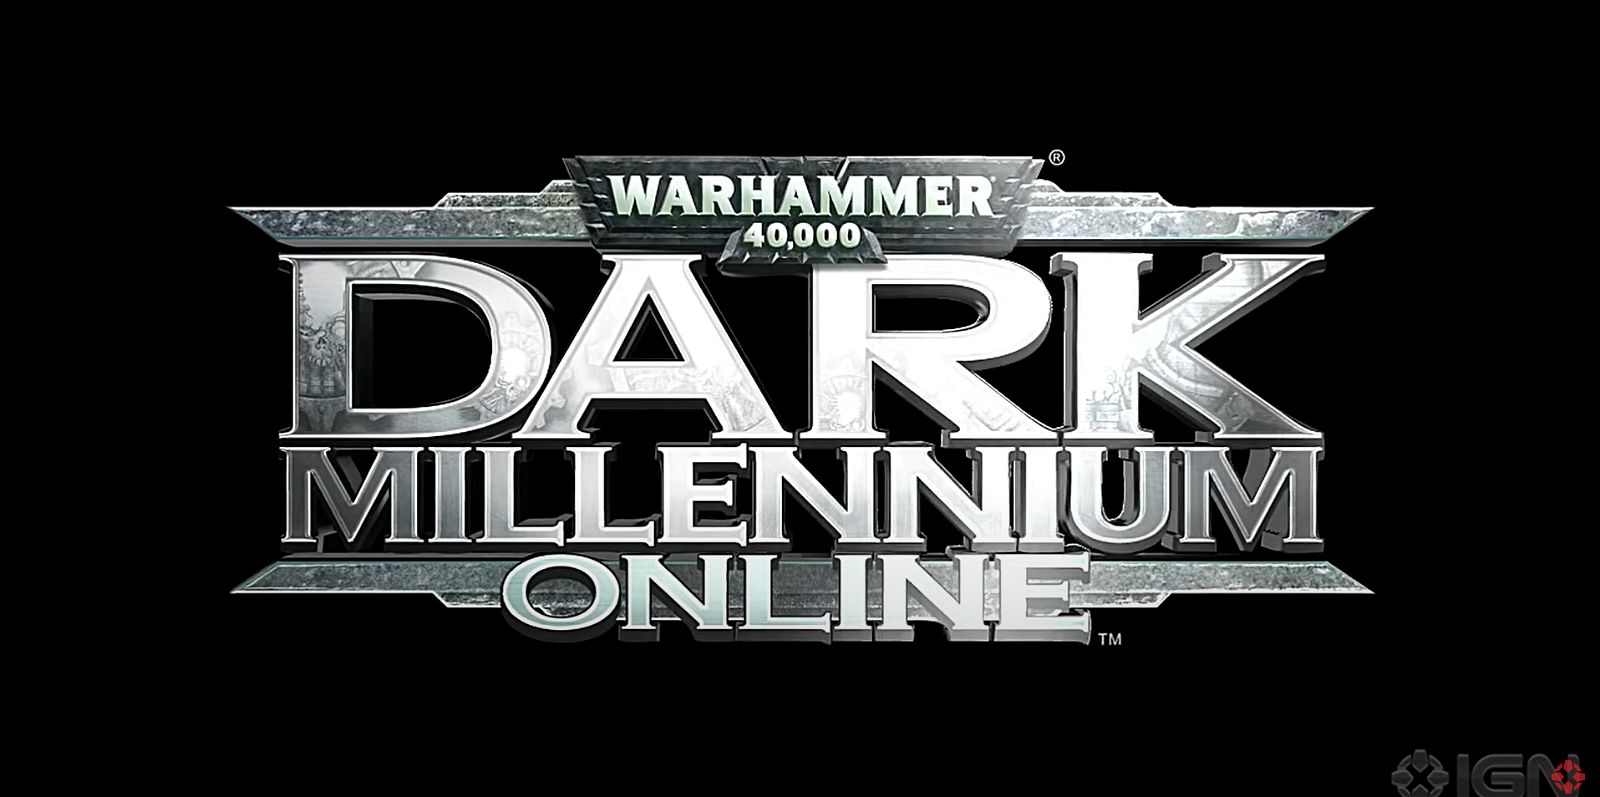 Warhammer 40,000: Dark Millennium Online was first revealed in 2010